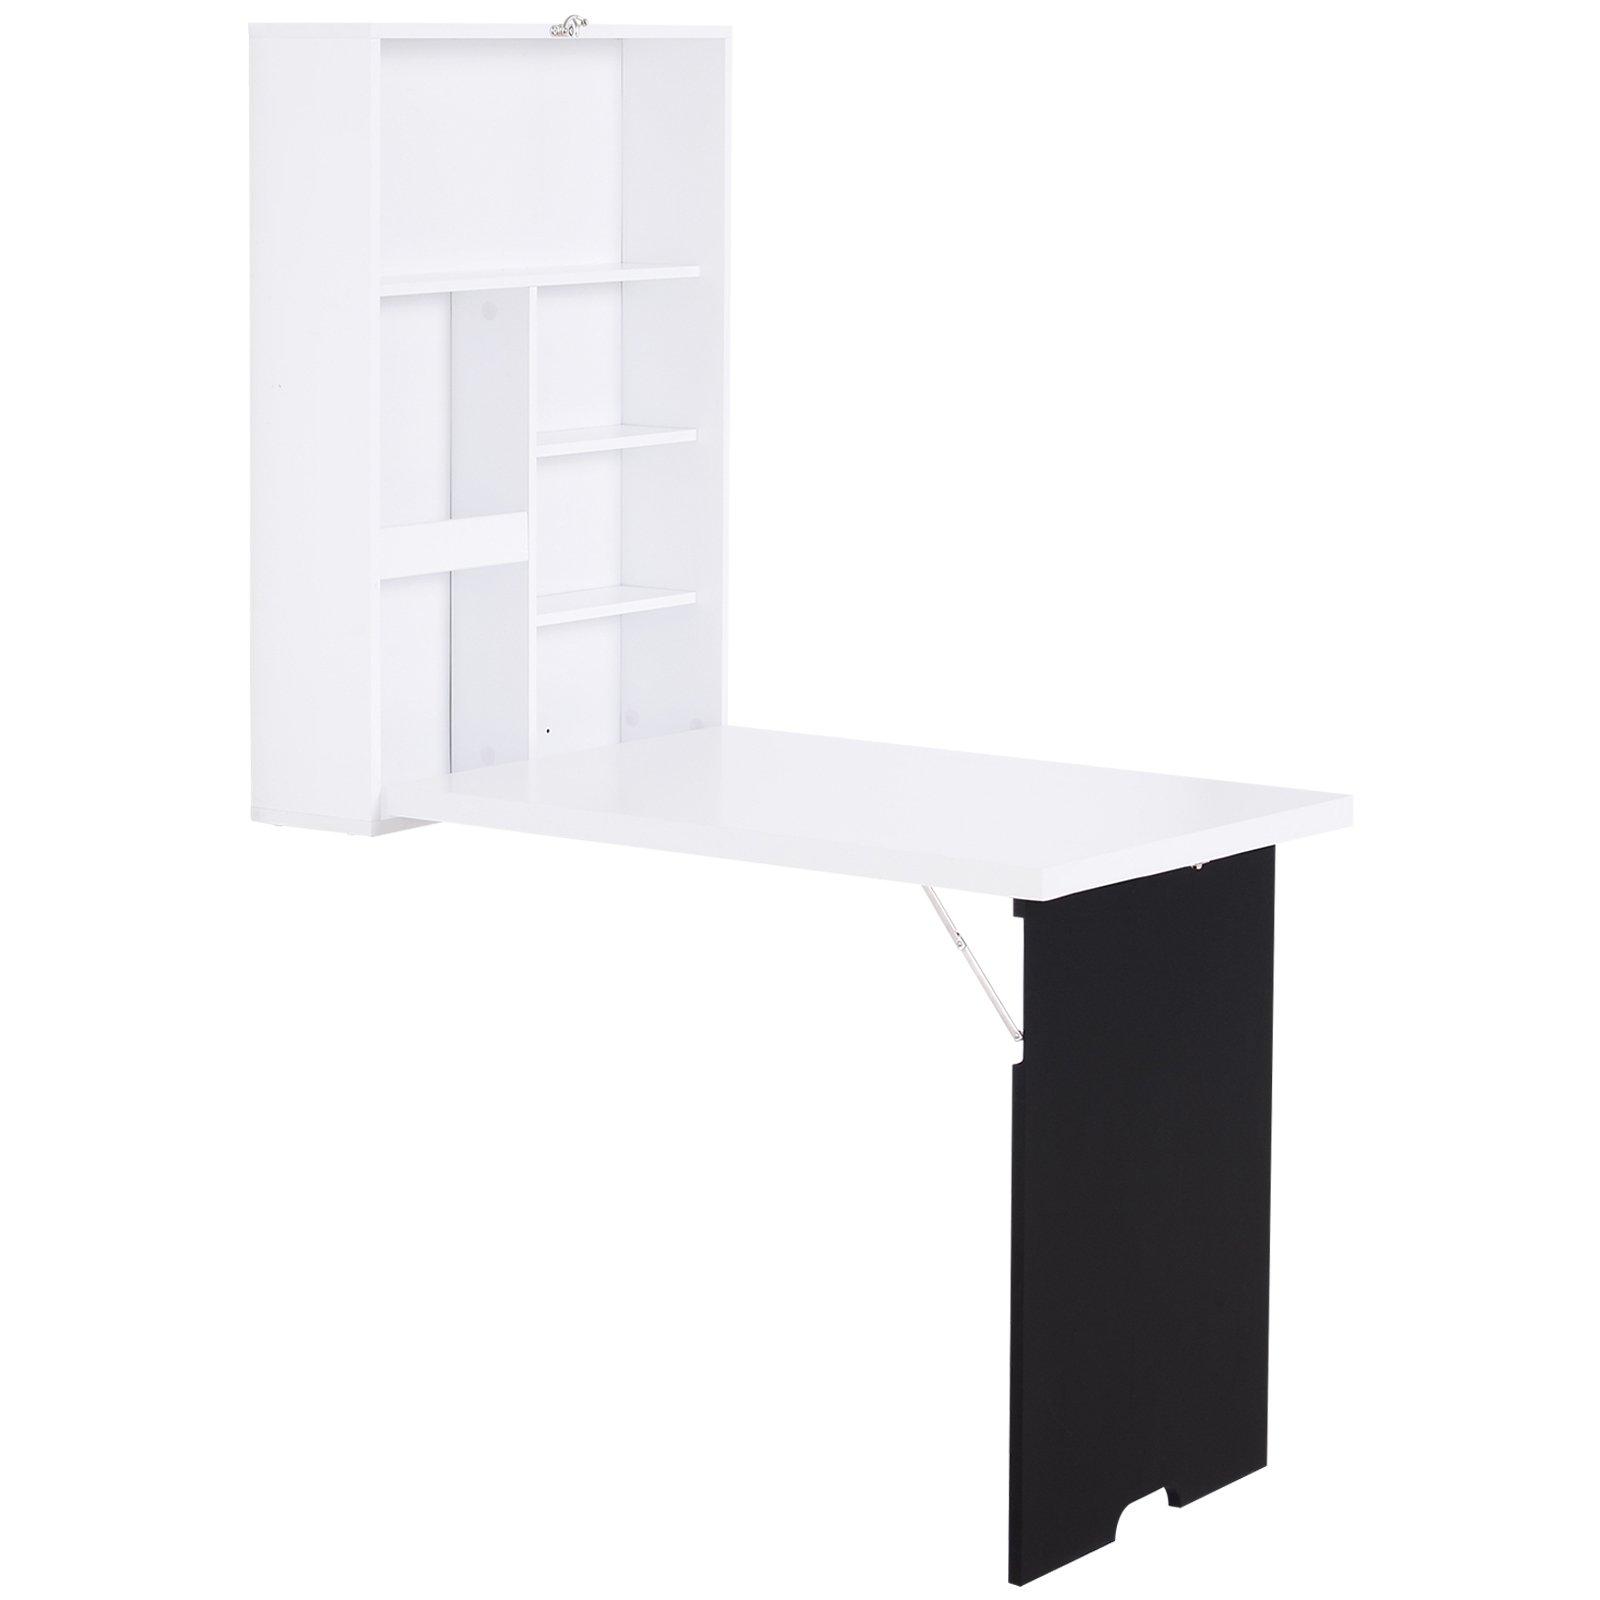 Folding Wall-Mounted Drop-Leaf Table withChalkboard Shelf